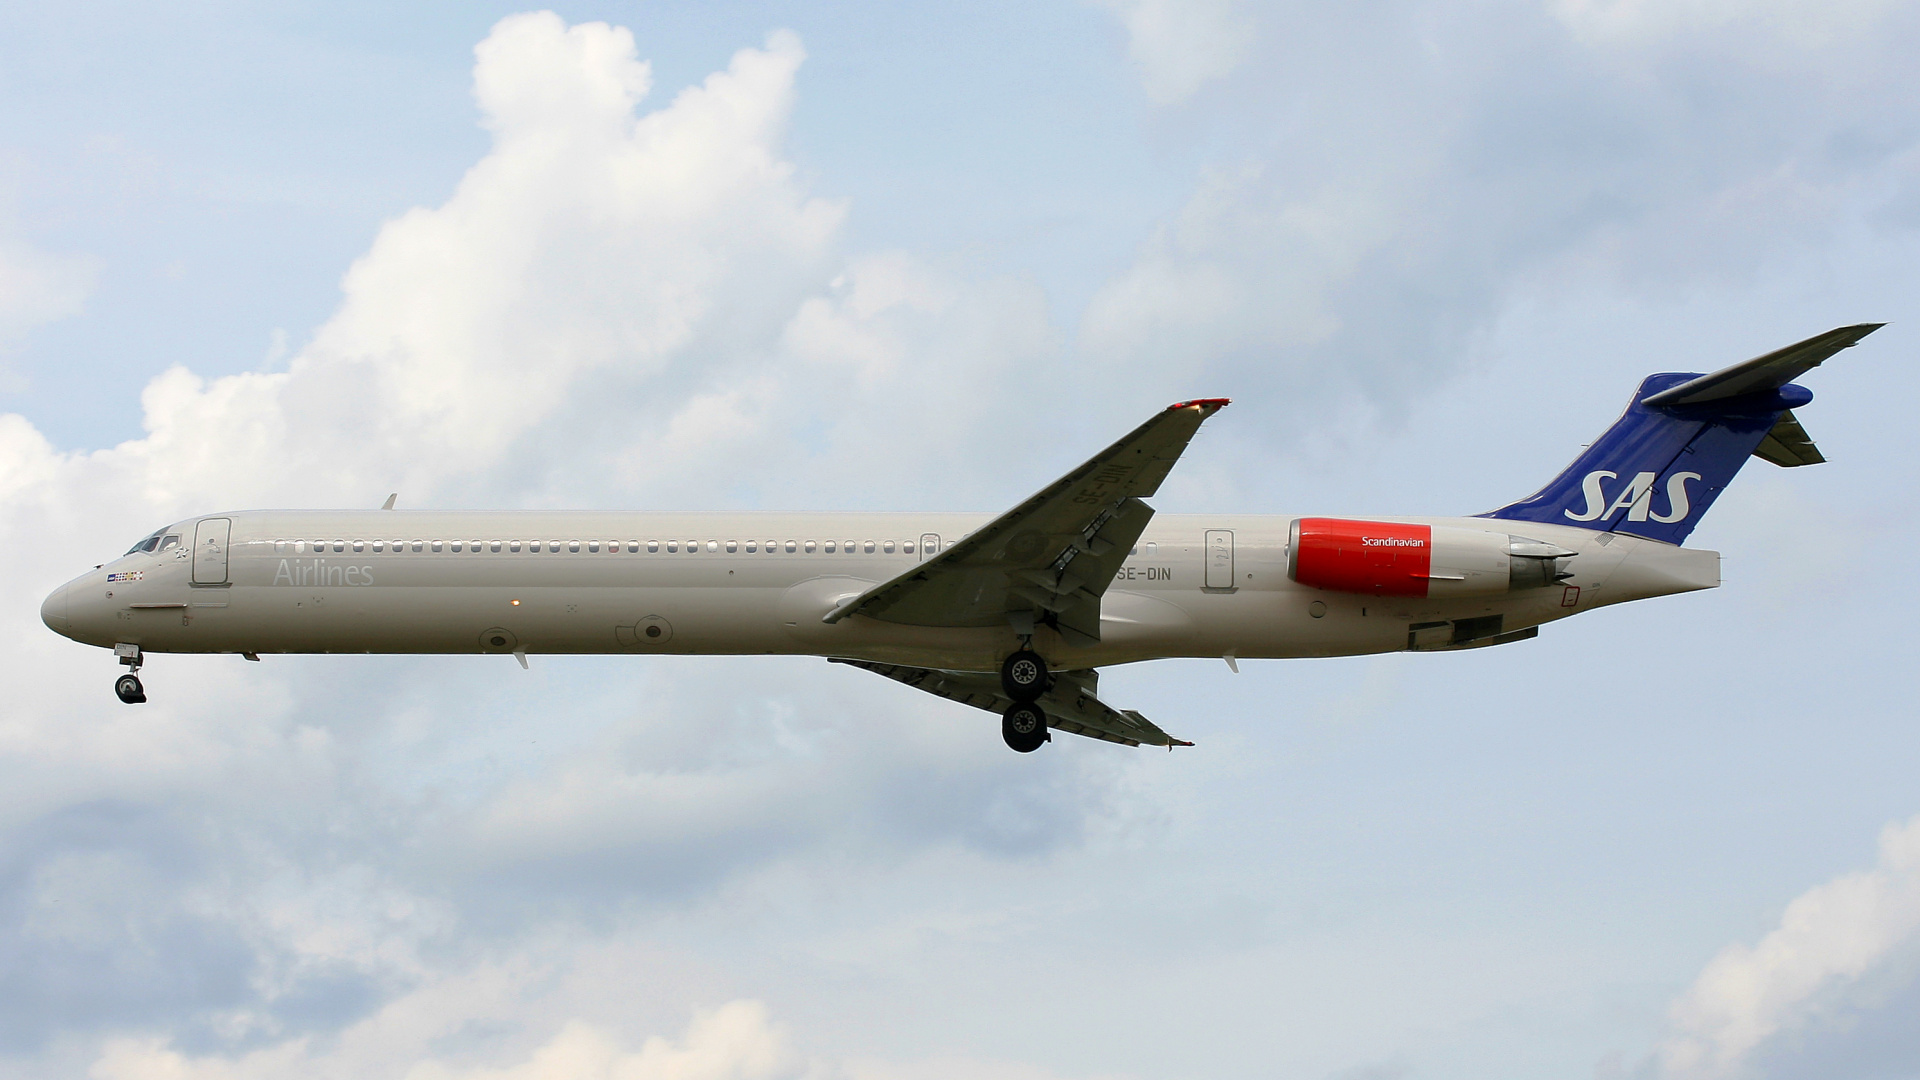 SE-DIN (Samoloty » Spotting na EPWA » McDonnell Douglas MD-82 » SAS Scandinavian Airlines)